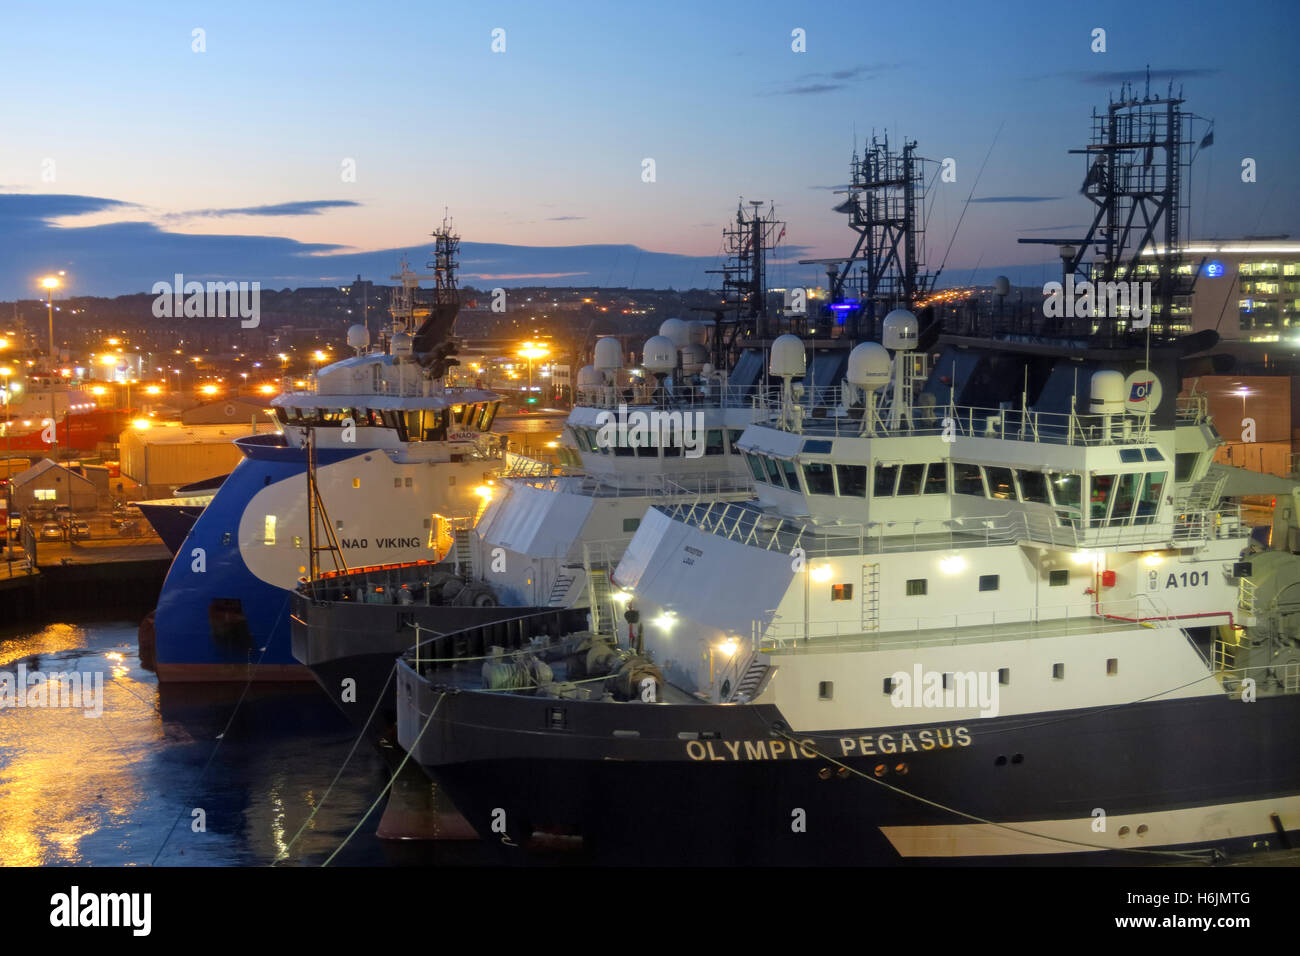 Port d'Aberdeen et expédition, ferries, bateaux, la nuit, Aberdeenshire, Écosse, Royaume-Uni - Pegasus olympique Banque D'Images